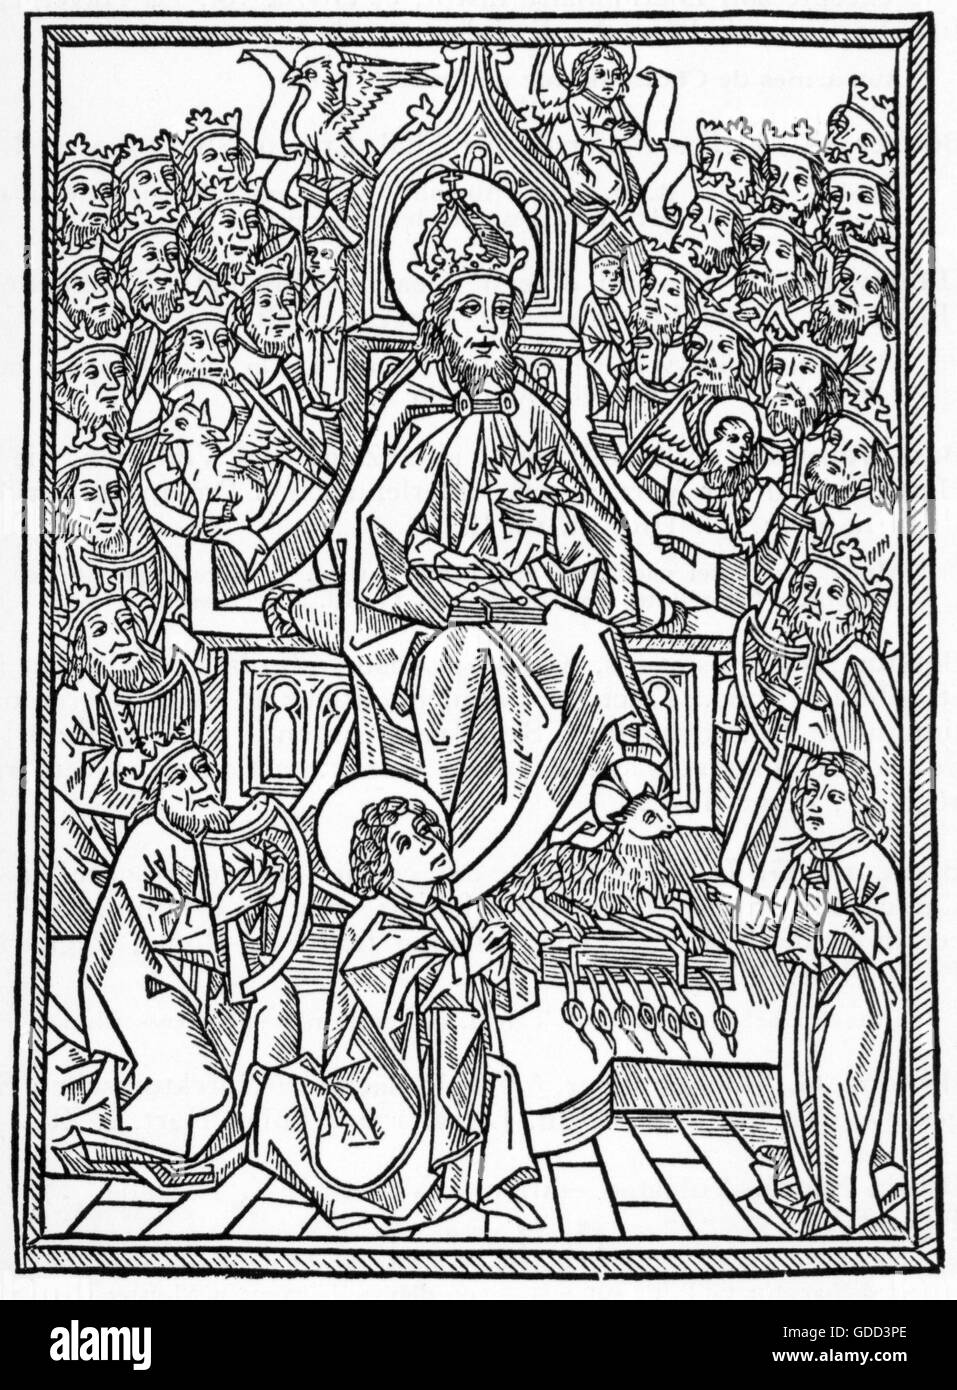 Nider, Johannes, before 1365 - 13.8.1438, German clergyman, works, 'Die vier vnd zwenzig gulden harpfen', title woodcut, printed by Martin Schott, Strasbourg, 1493, Stock Photo